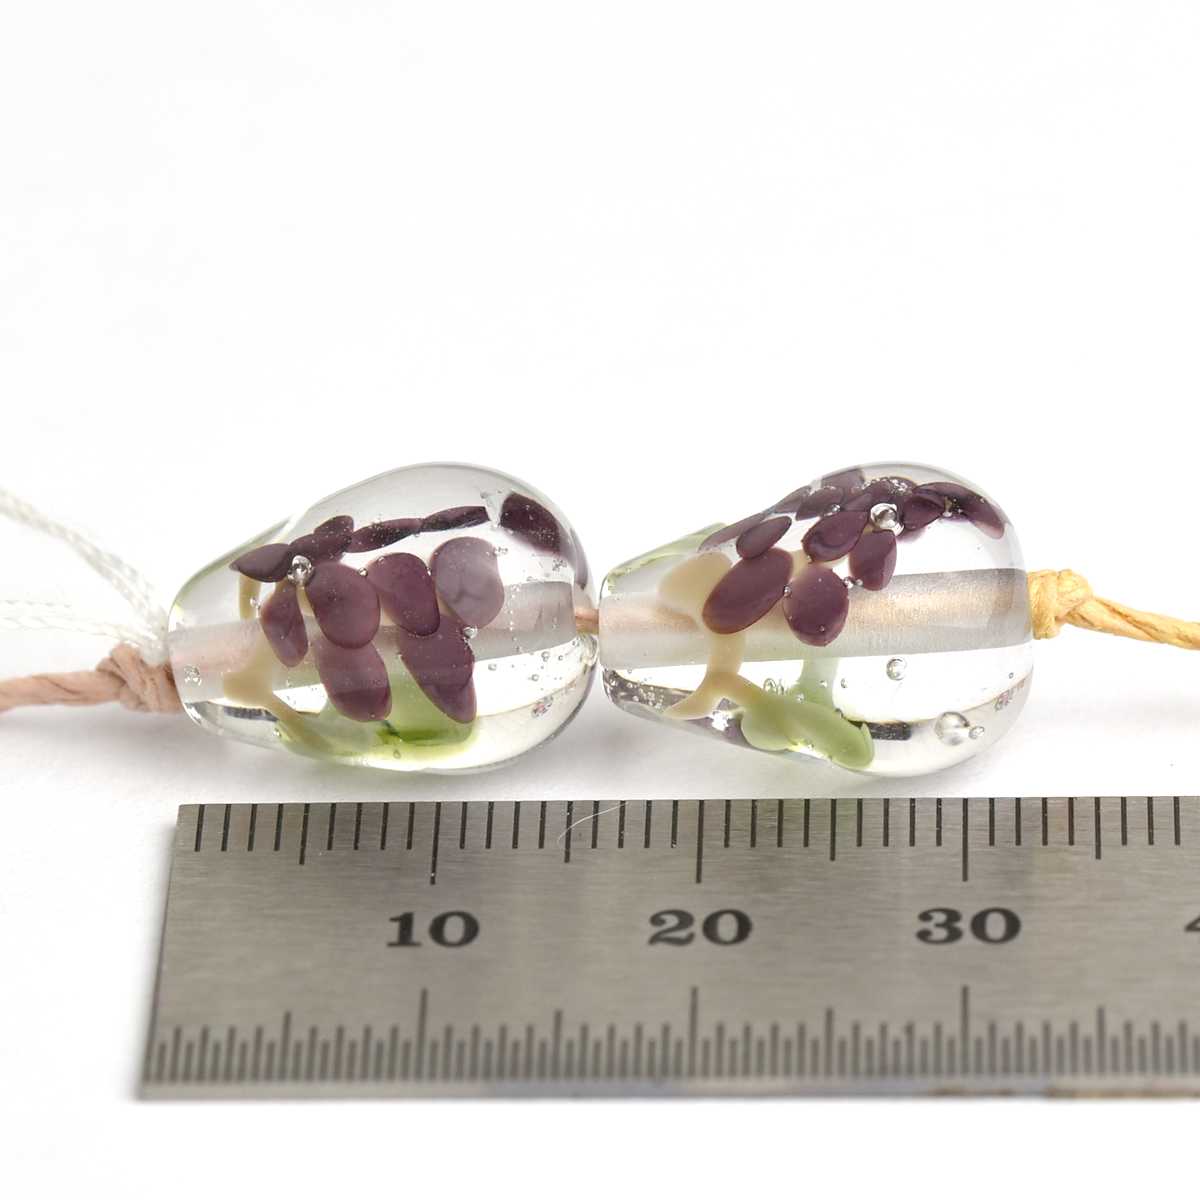 Duo de perles de verre avec raisins 🖤 Fabrication française 🖤